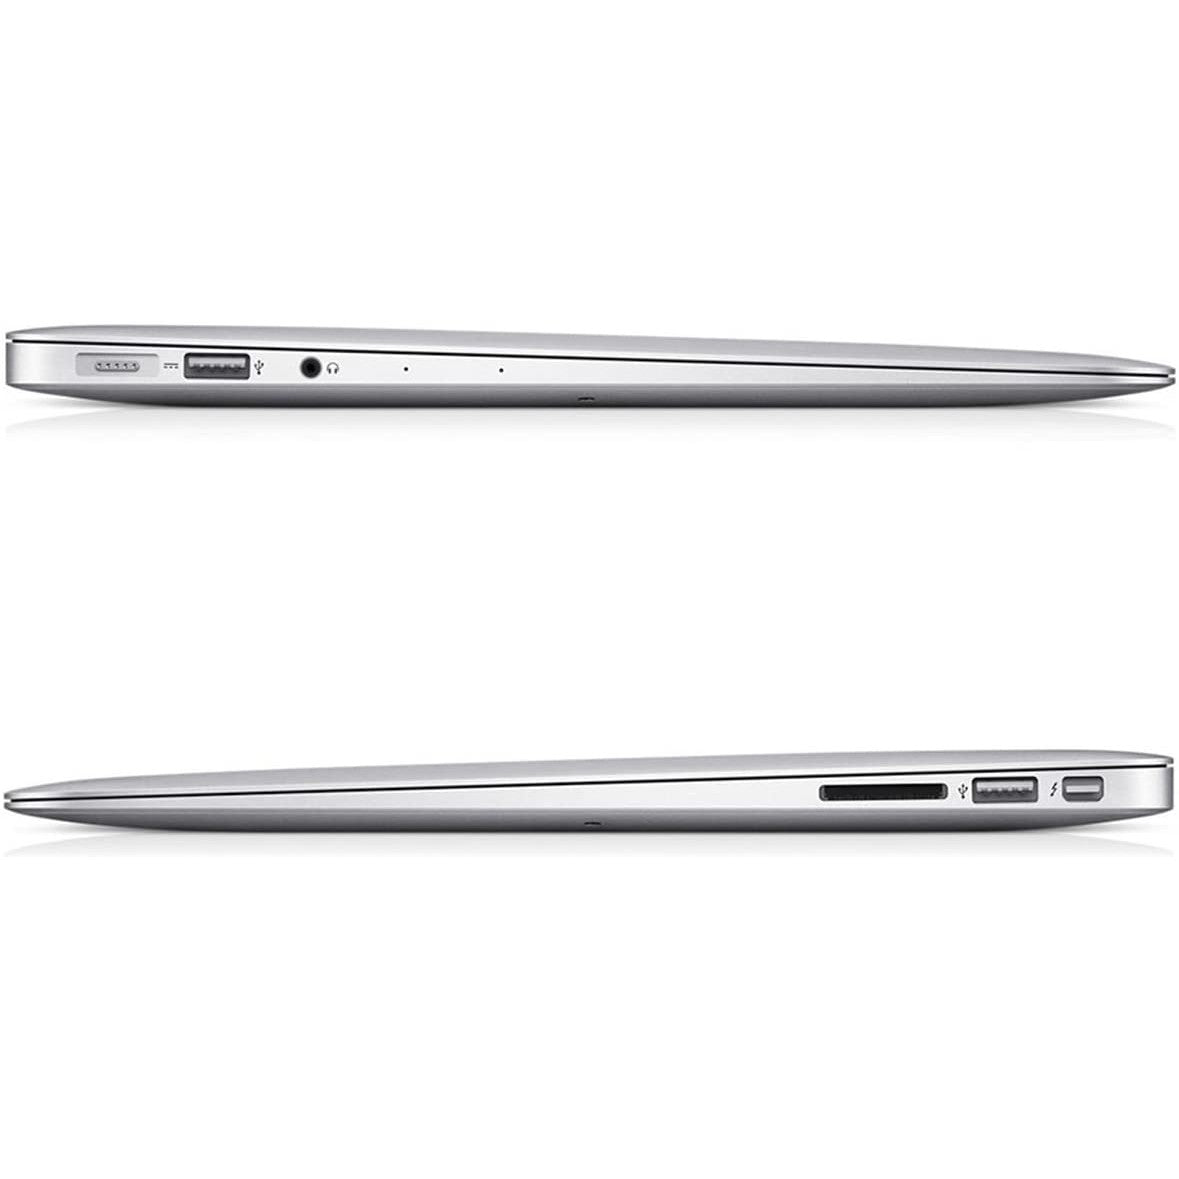 Apple MacBook Air MMGF2LL/A (2015) Intel i5-5250U 8GB 128GB SSD 13.3" - Good